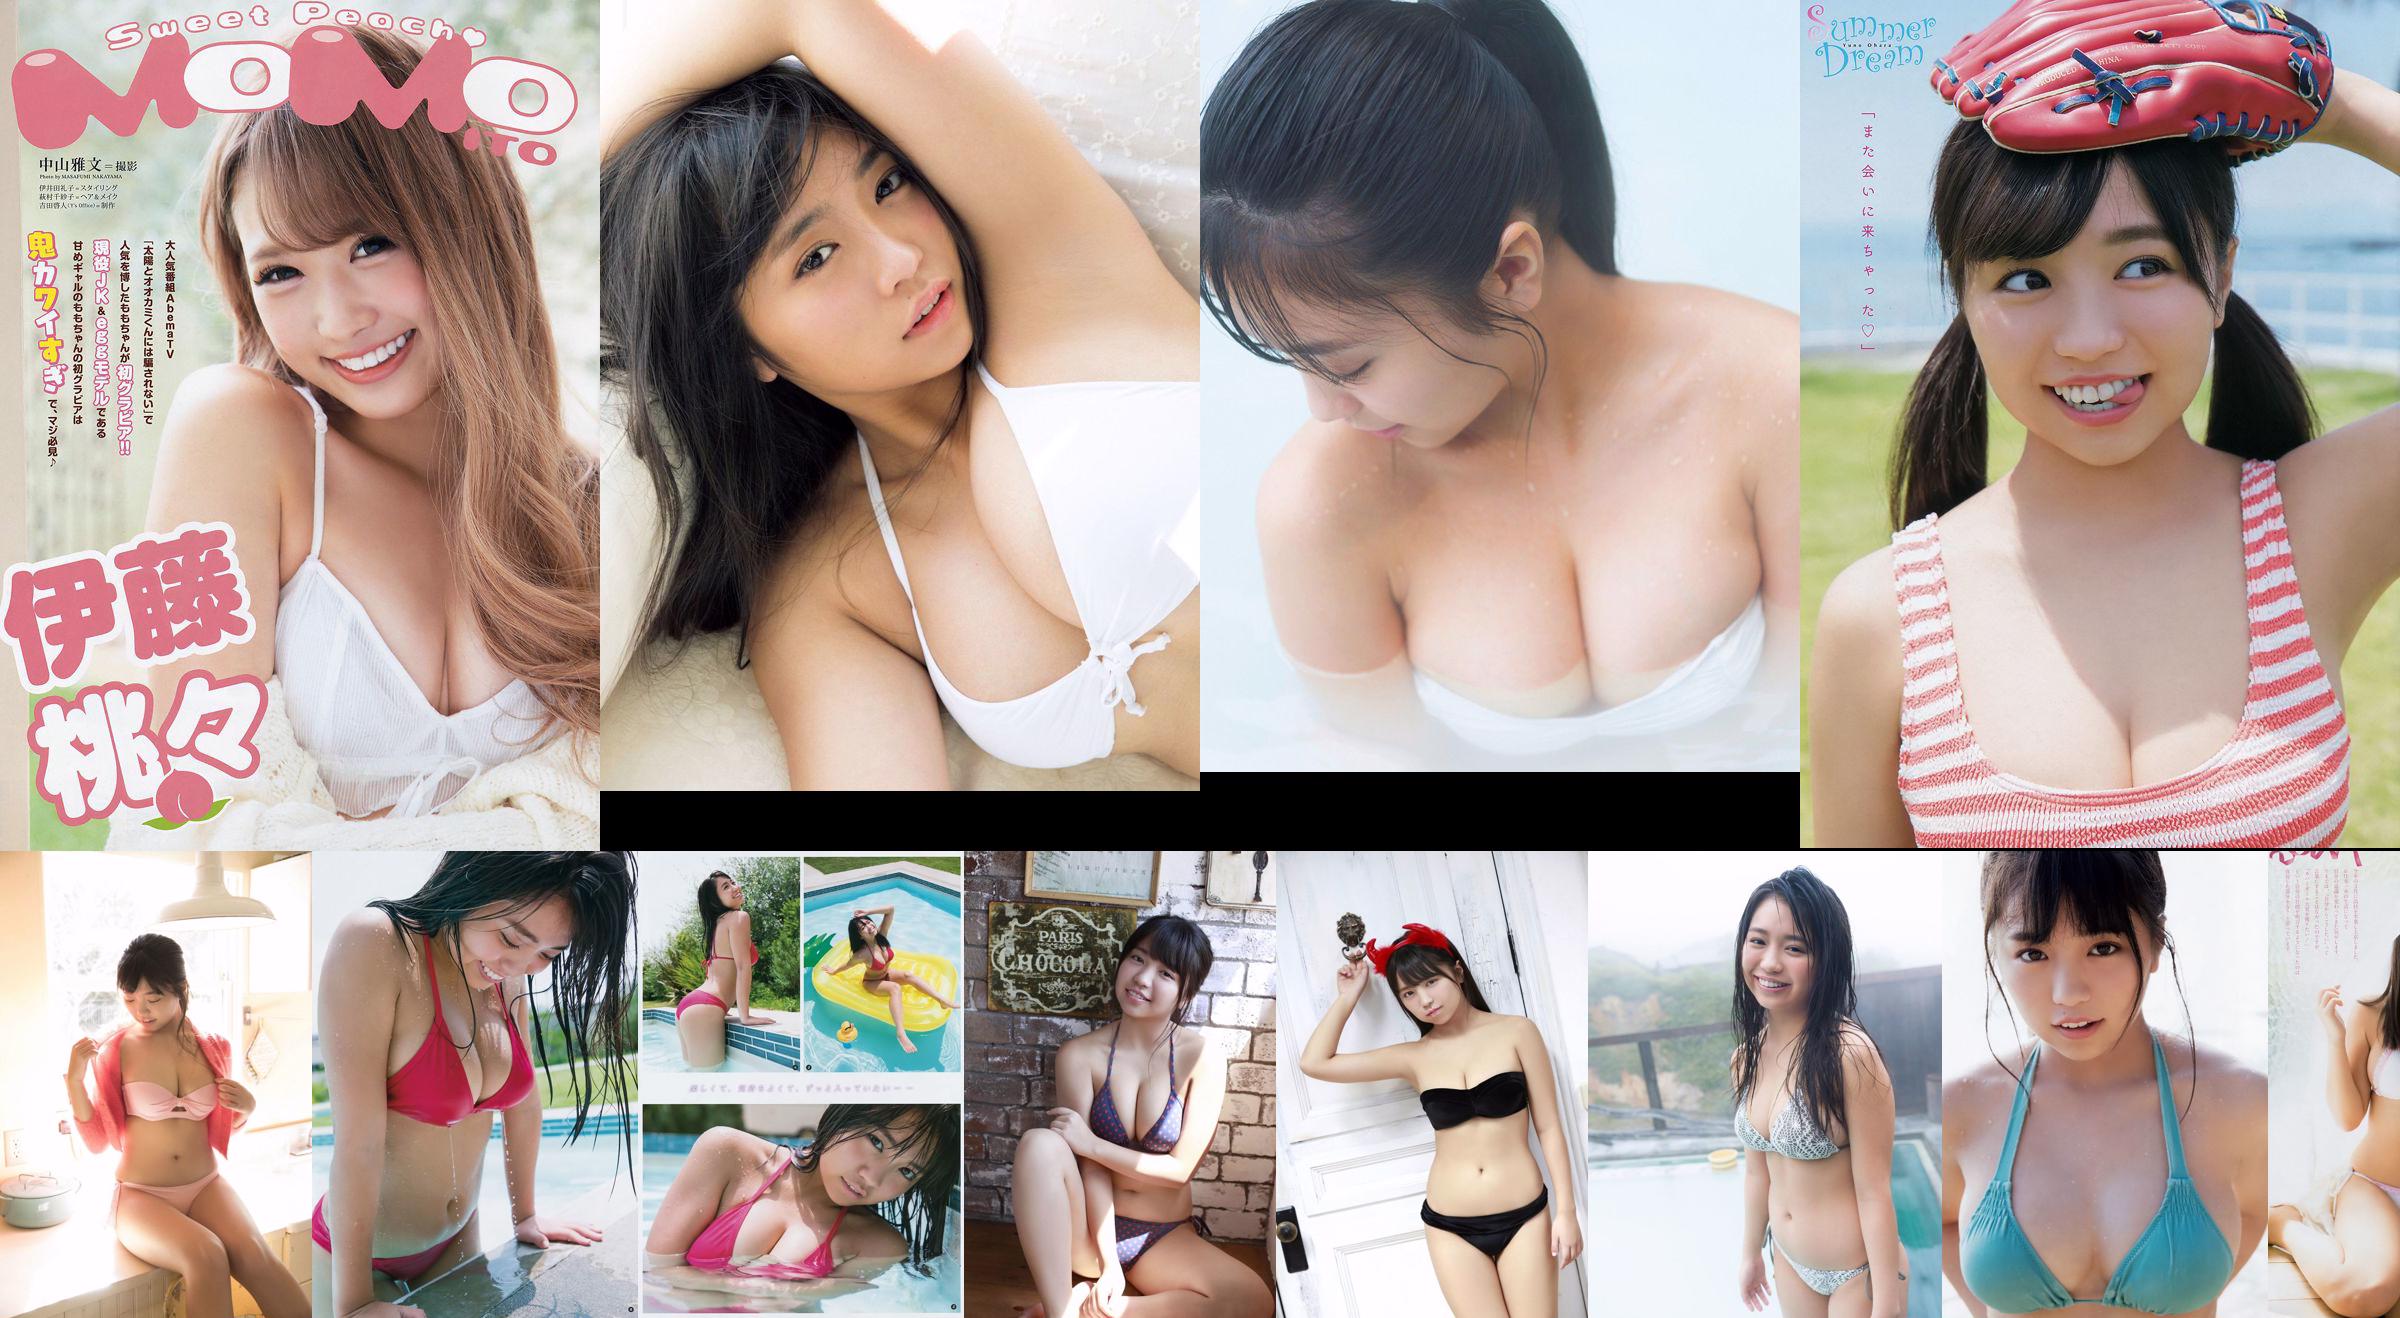 [FLASH] Yuno Ohara Yuko Nakagawa Exporteert Arisha 2018.12.04 Photo Magazine No.c02e16 Pagina 4